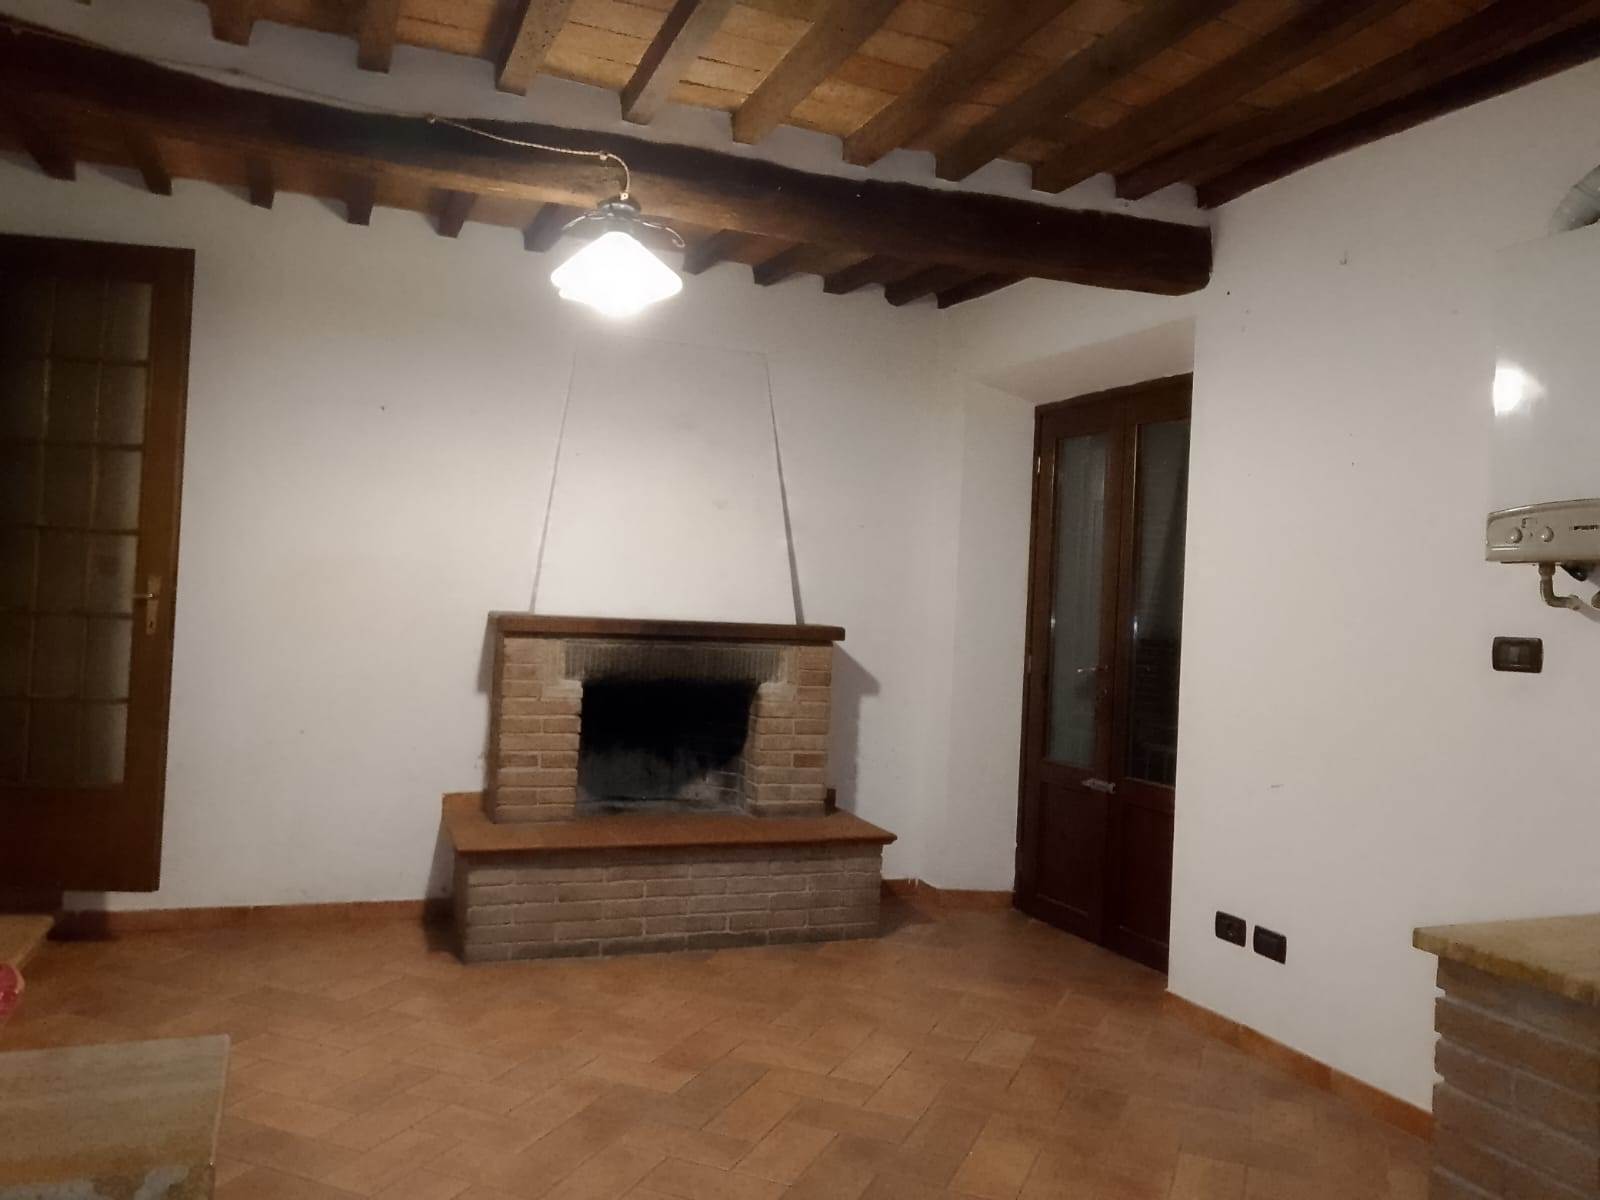 Appartamento in vendita a Monteverdi Marittimo, 3 locali, zona eto, prezzo € 65.000 | PortaleAgenzieImmobiliari.it